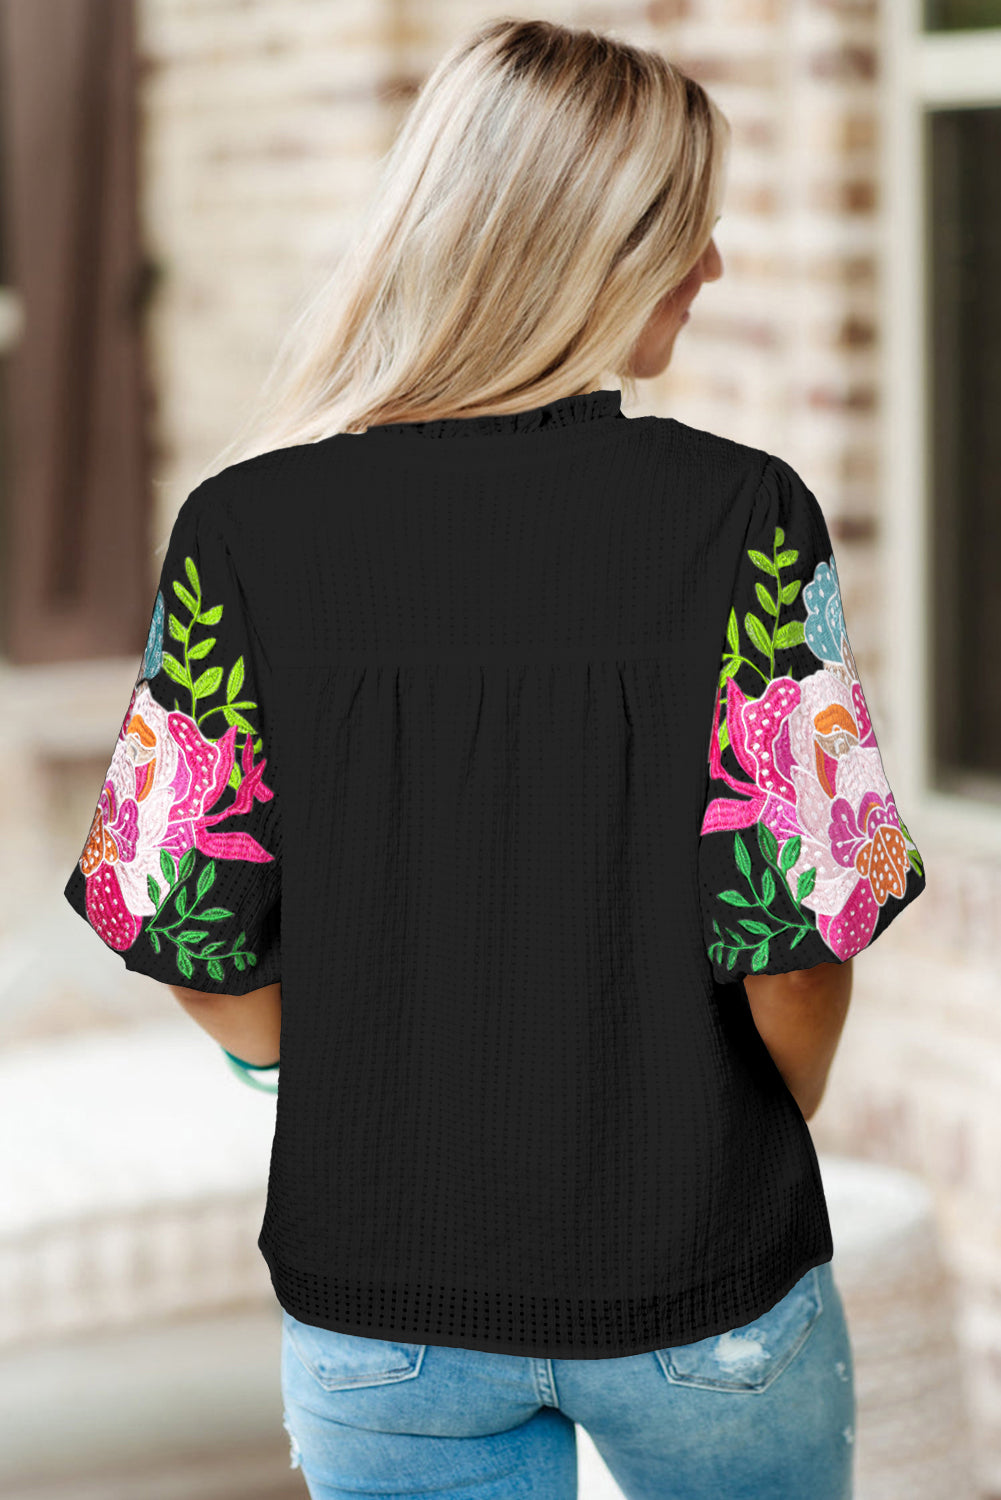 Crna cvjetno izvezena bluza s puf rukavima i urezanim vratom